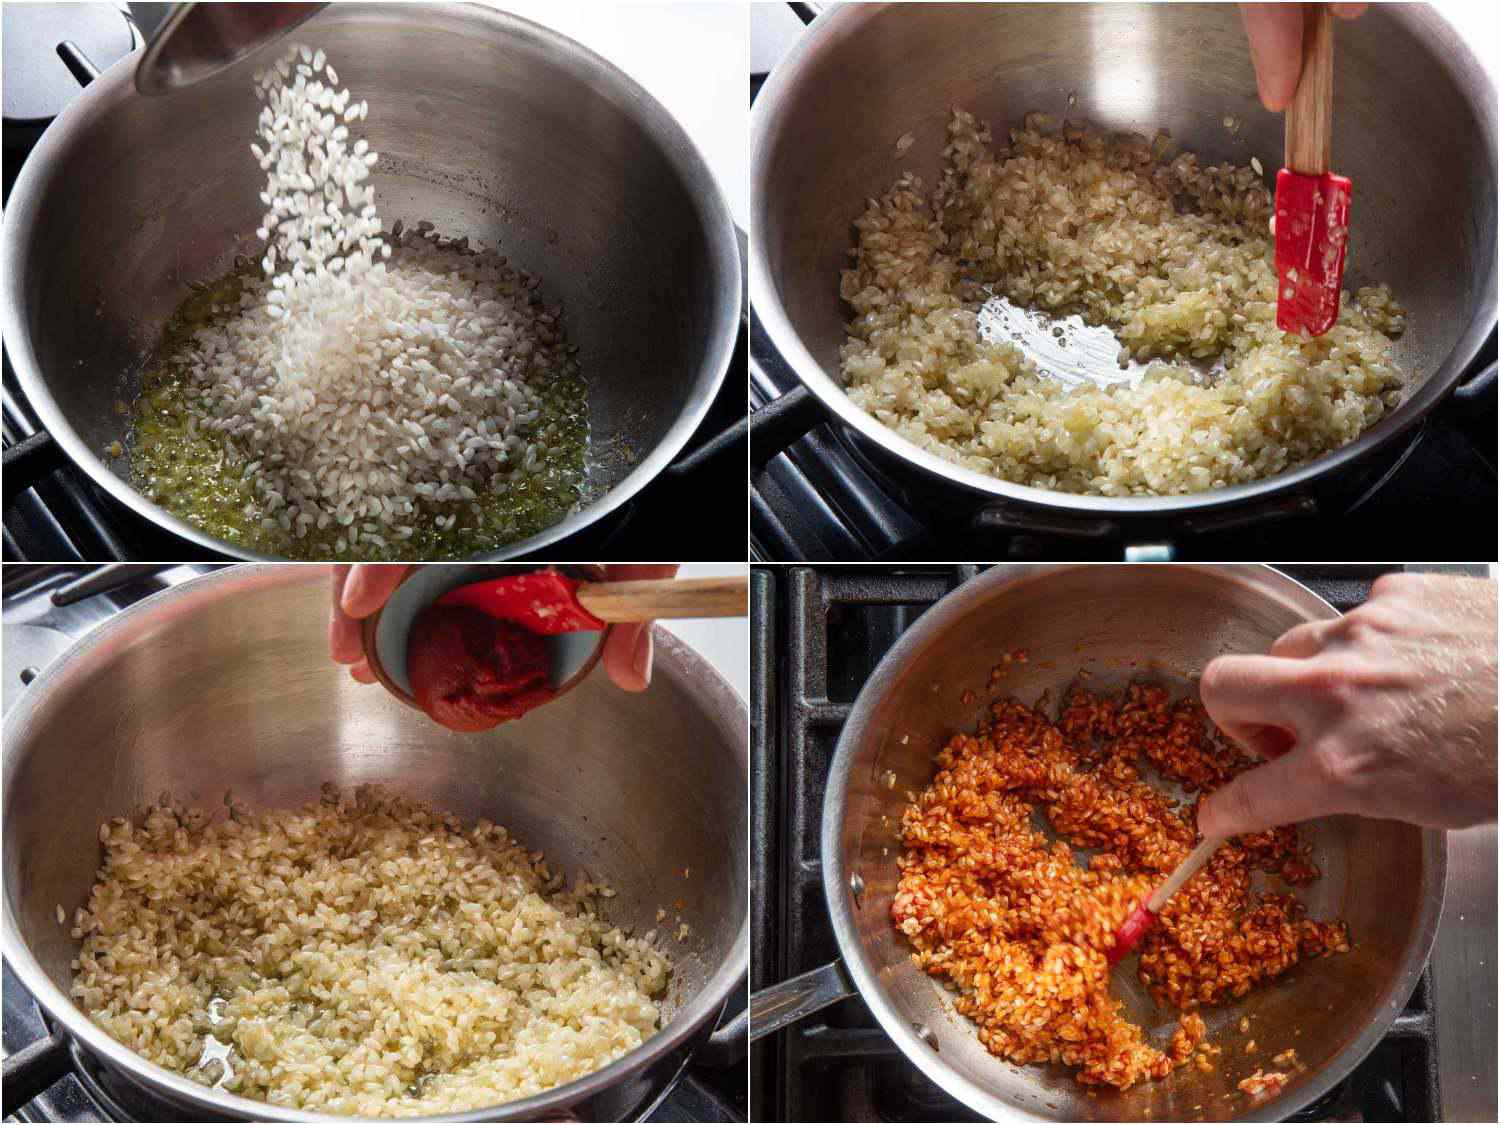 20190903-pomodoro-al-riso-joel-russo-adding-rice-tomato-paste